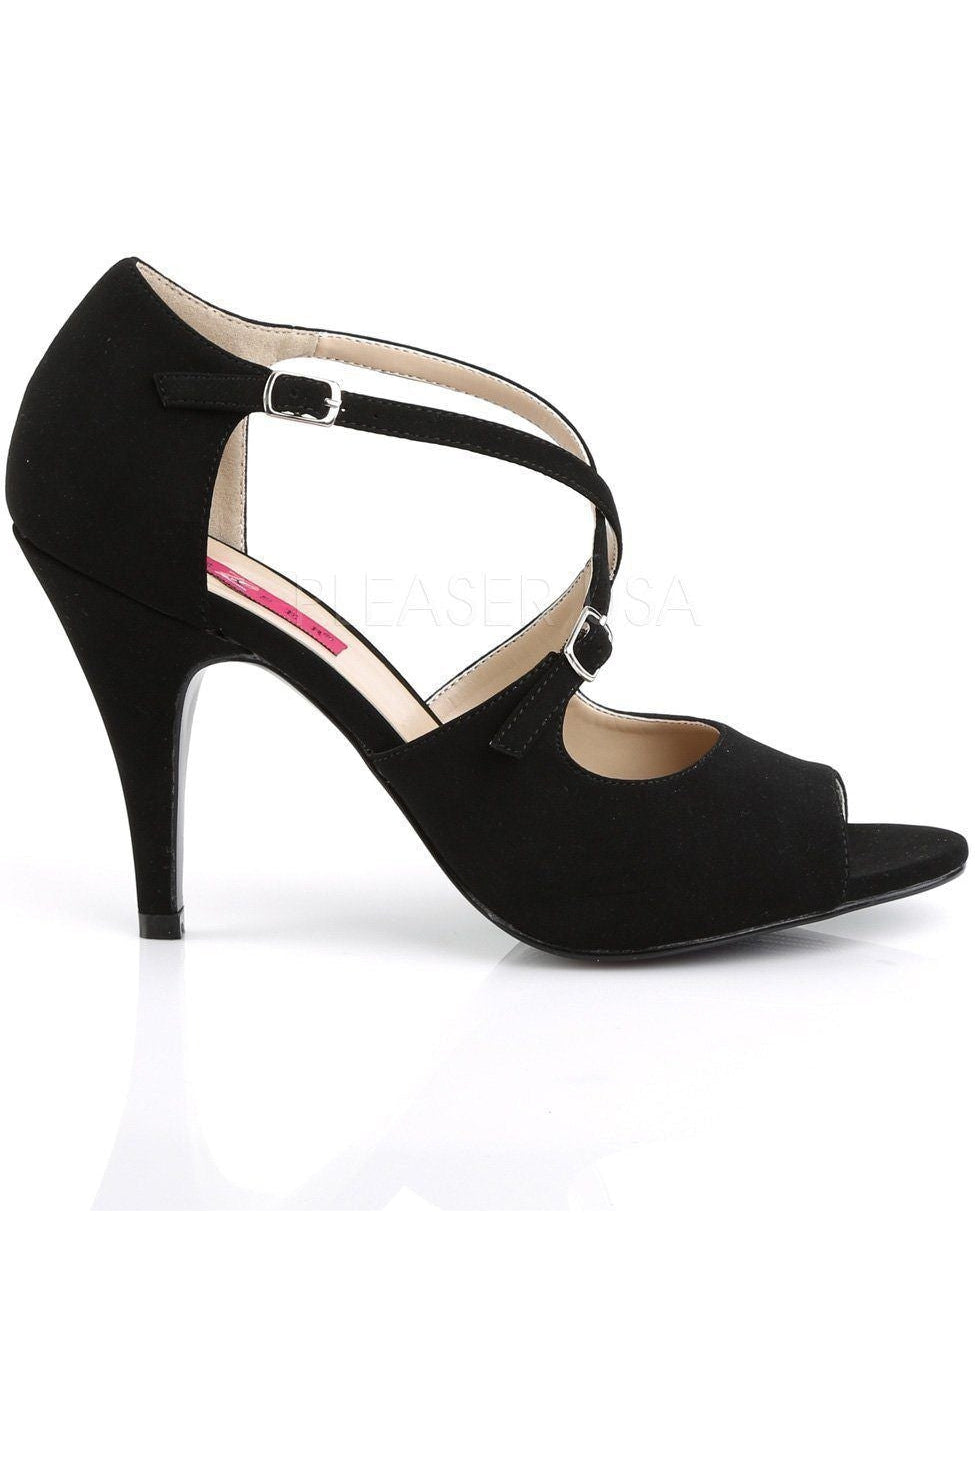 DREAM-412 Sandal | Black Faux Leather-Pleaser Pink Label-Sandals-SEXYSHOES.COM